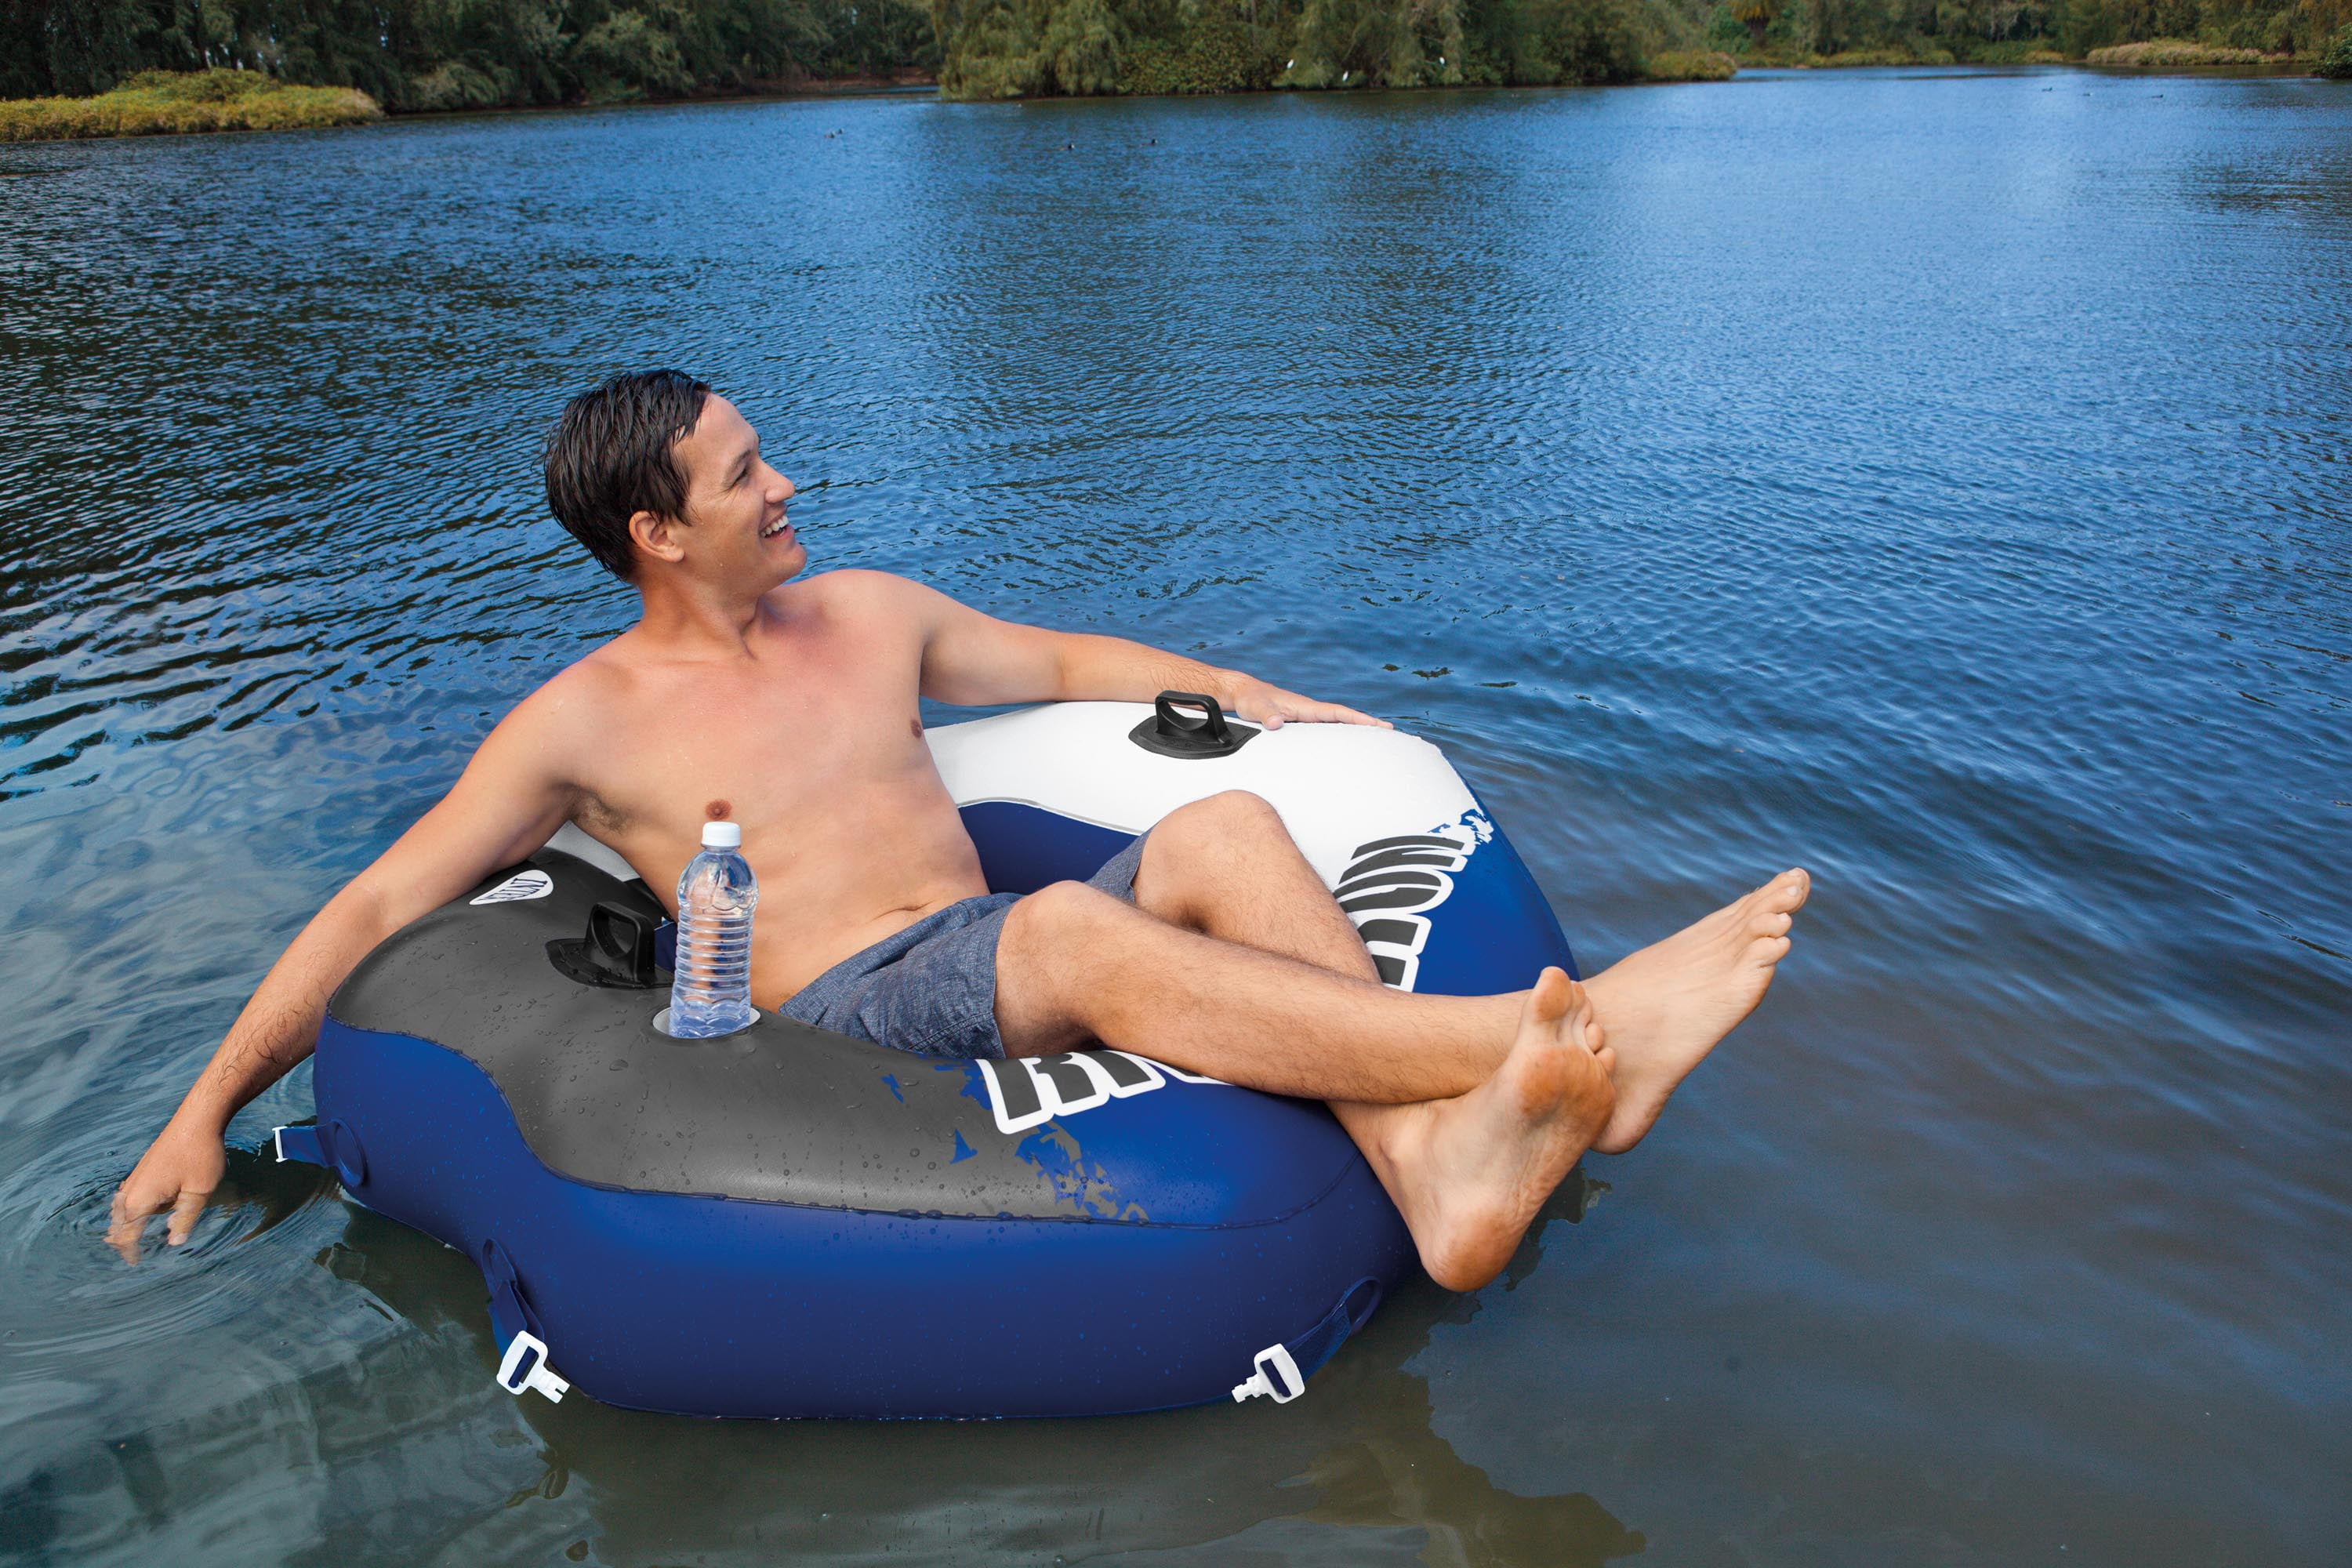 Ozark Trail River Run Adult Tube Float Pool Water Swim Raft Lounger W/ Grab Rope